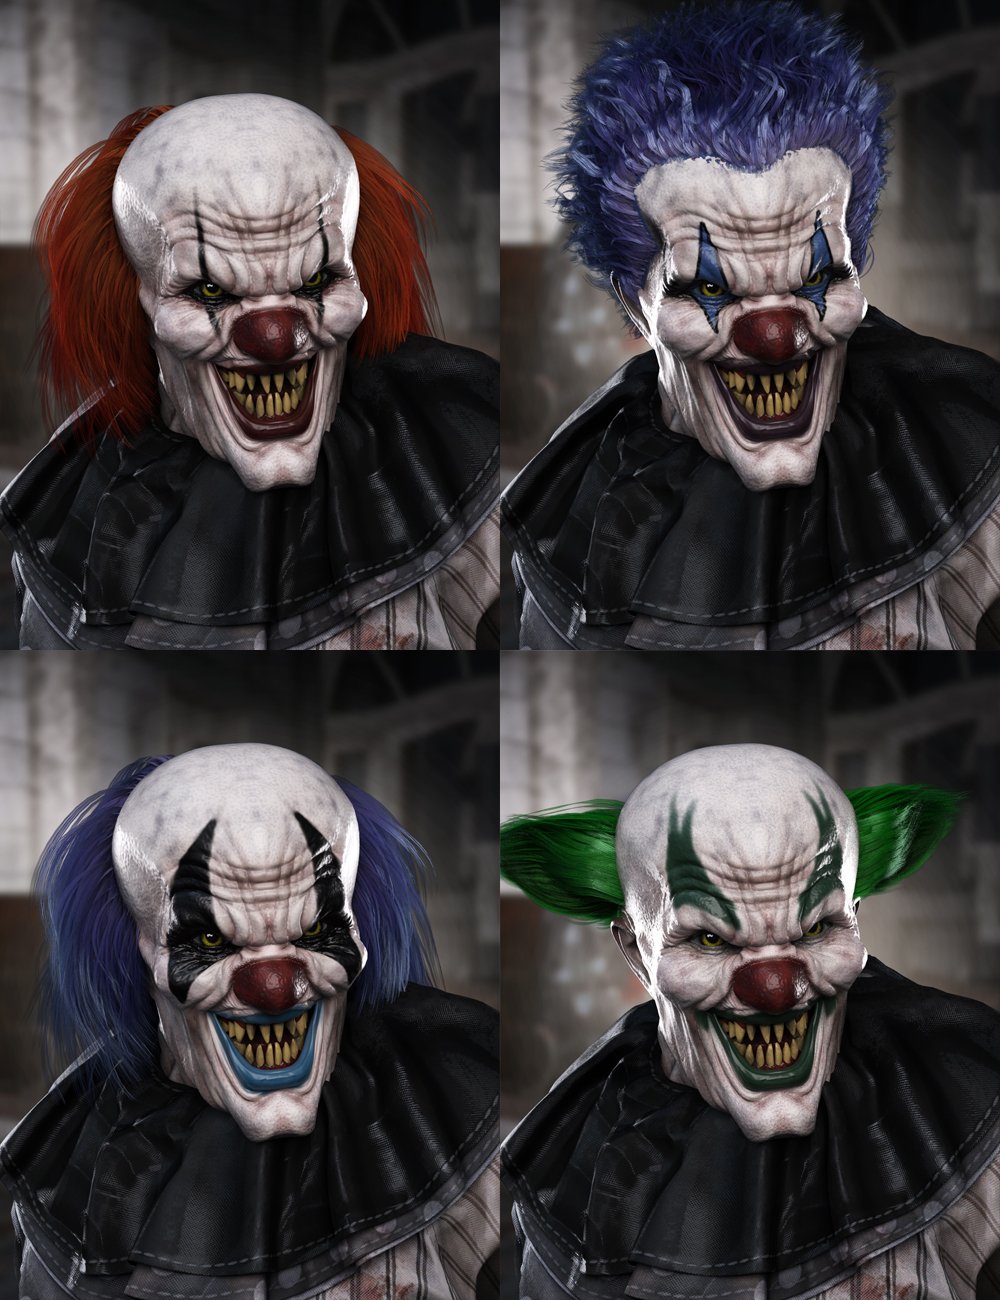 Evil Clown HD for Genesis 8 Male by: Josh Crockett, 3D Models by Daz 3D